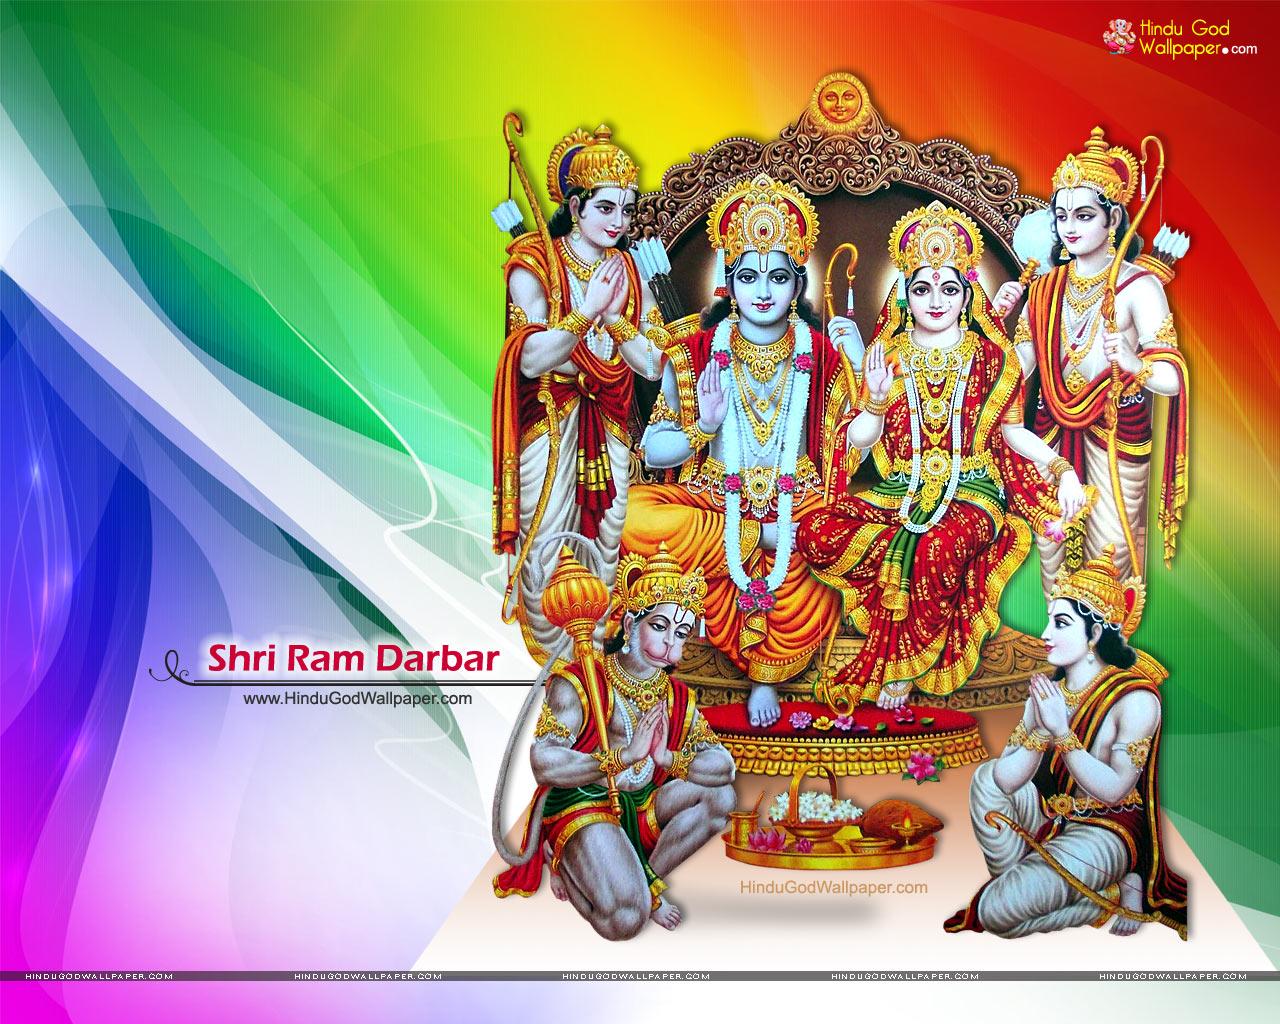 Ram Darbar Wallpaper, Image & Pics Free Download